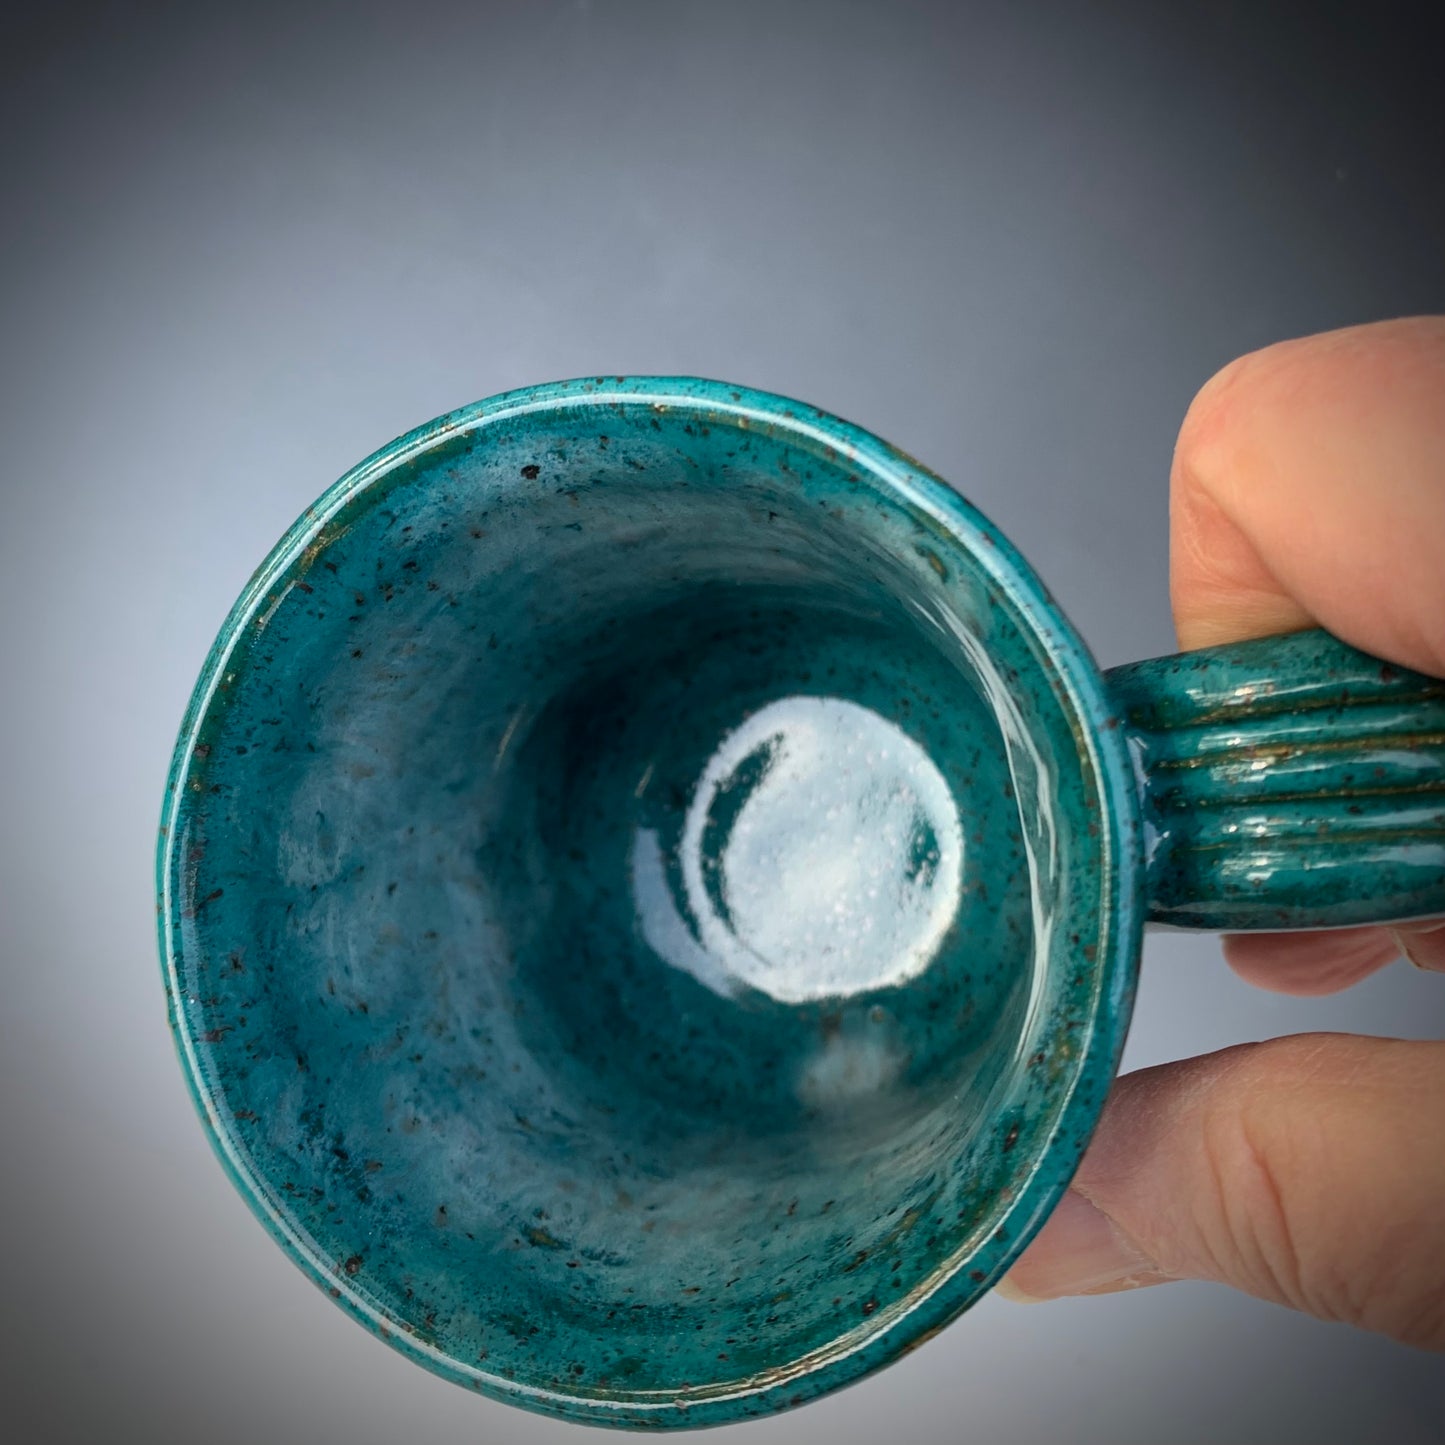 Turquoise Stoneware Mug